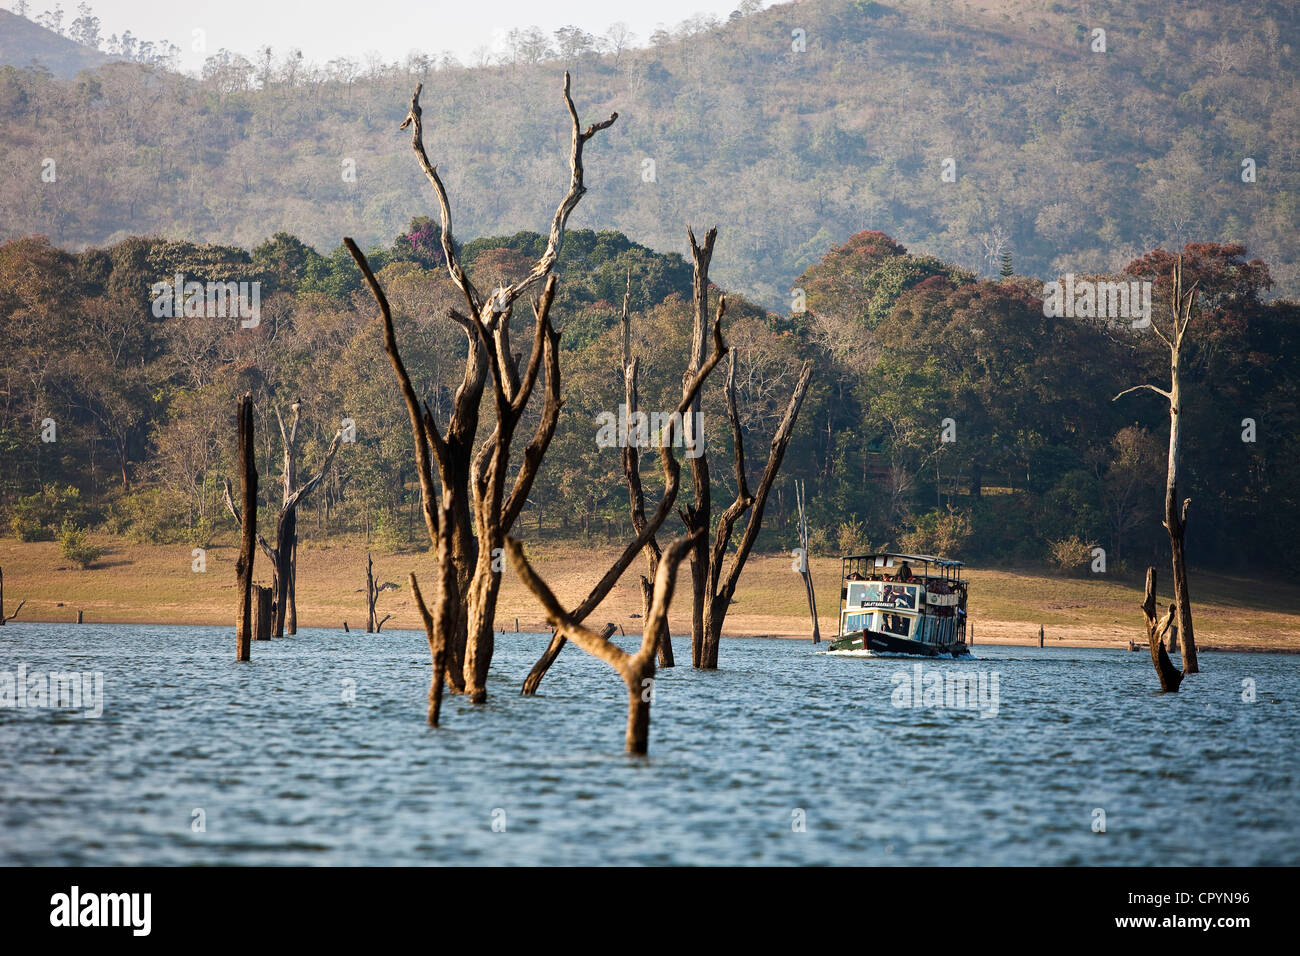 Indien, Bundesstaat Kerala, Perriyar, Bootsfahrt auf dem See, die Fauna zu entdecken Stockfoto